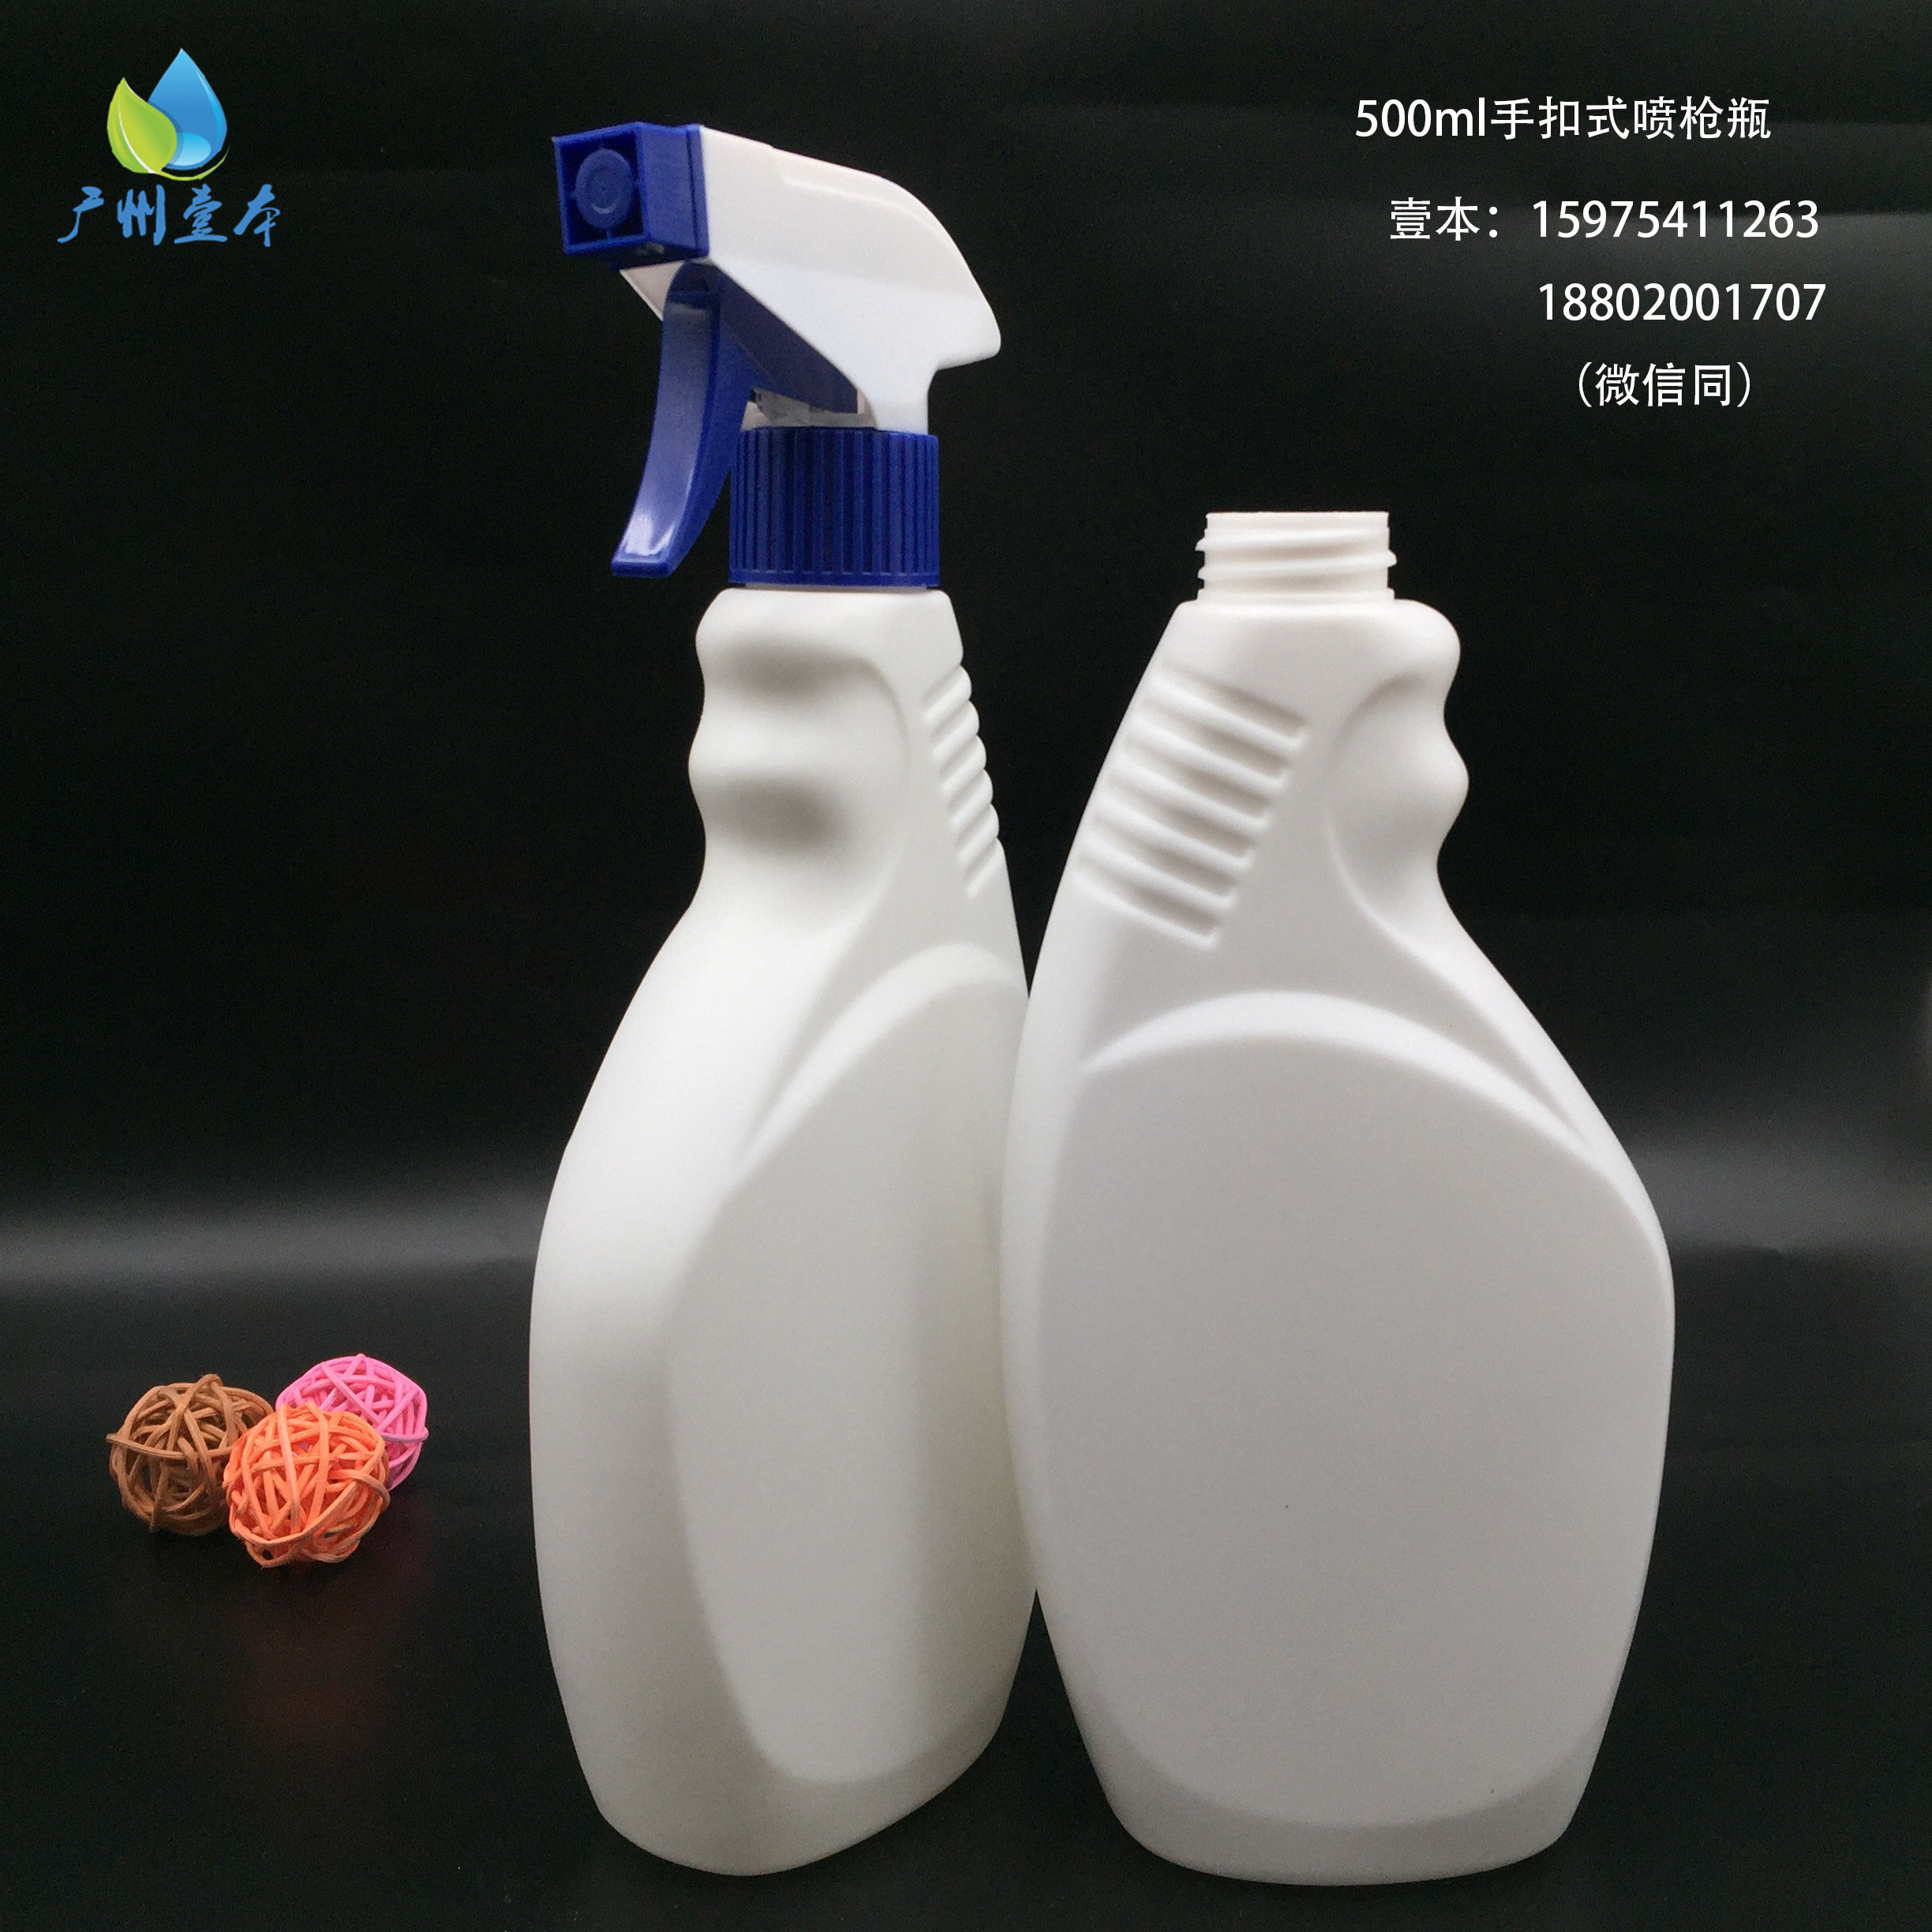 广州壹本塑料厂家直销HDPE 500ml手扣式喷枪瓶 清洁剂 消毒液通用喷瓶